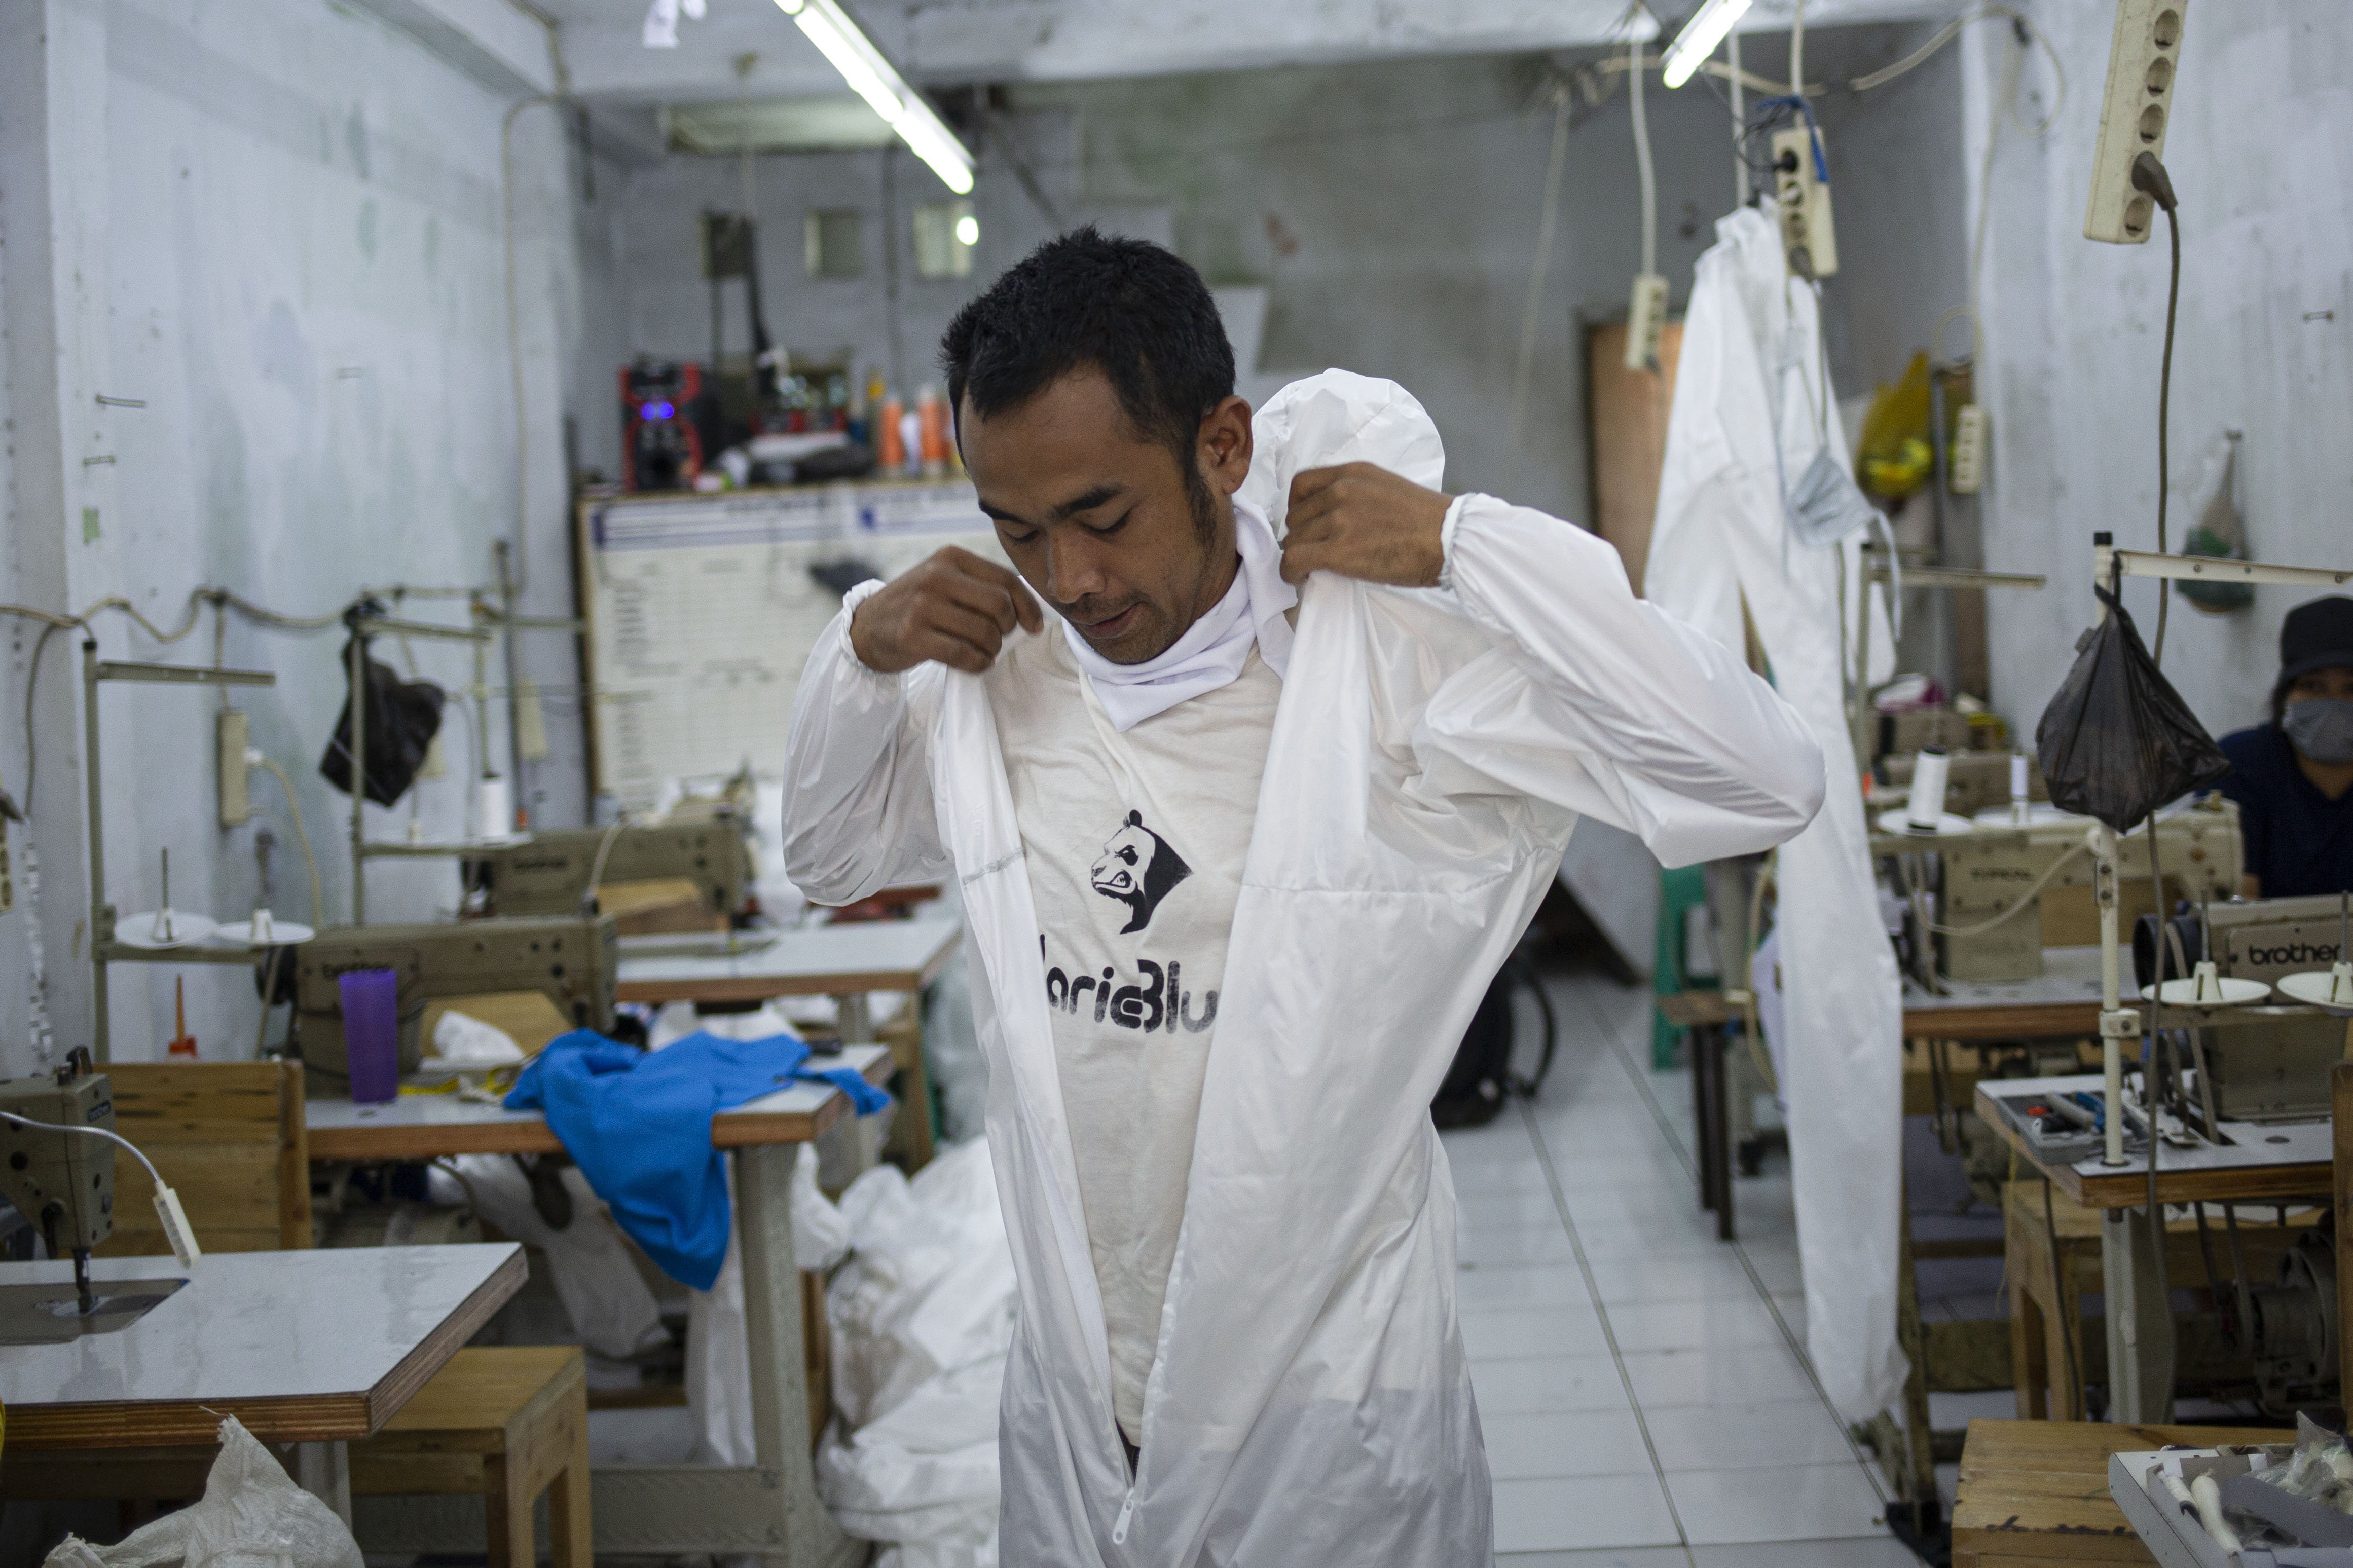 Pekerja menggunakan pakaian Alat Pelindung Diri (APD) tenaga medis di Pusat Industri Kecil, Penggilingan, Jakarta Timur, Rabu (24/3). Lonjakan jumlah kasus penyebaran virus corona (COVID-19) di beberapa wilayah menyebabkan terbatasnya ketersediaan alat perlindungan diri (APD). Pakaian untuk alat perlindungan diri tersebut dijual dengan harga Rp. 100.000.